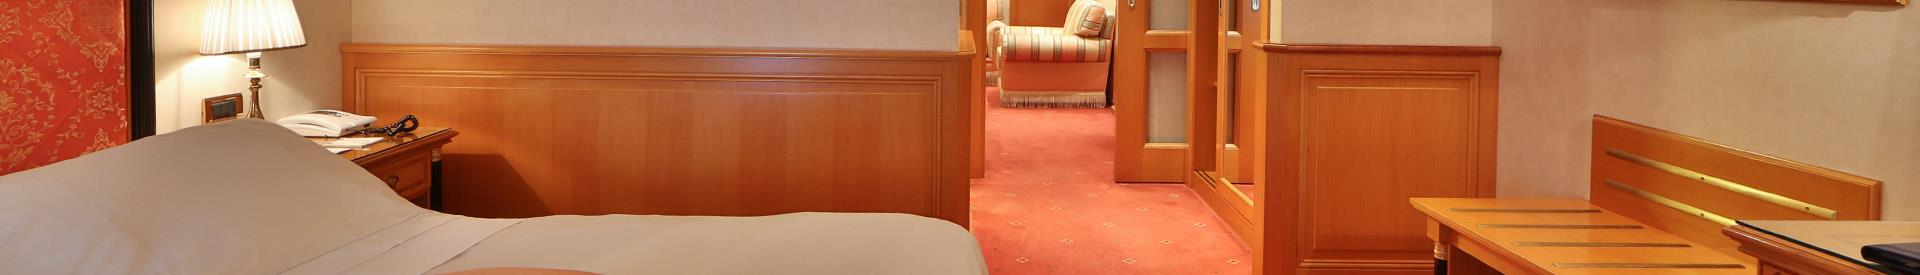  4 star  hotel room in Bergamo (BG)